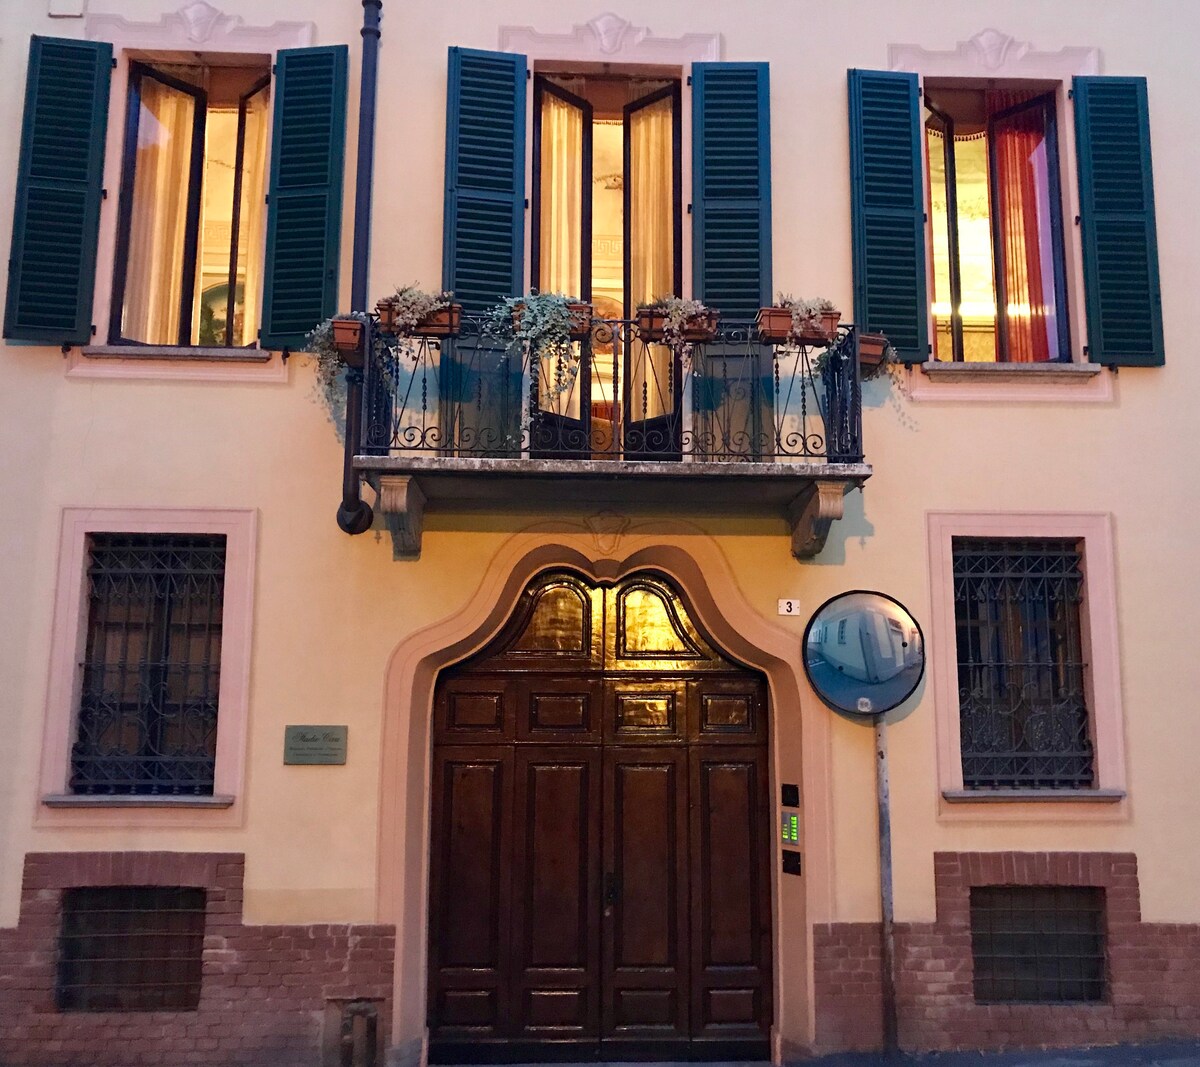 Palazzo Terzano, living history.